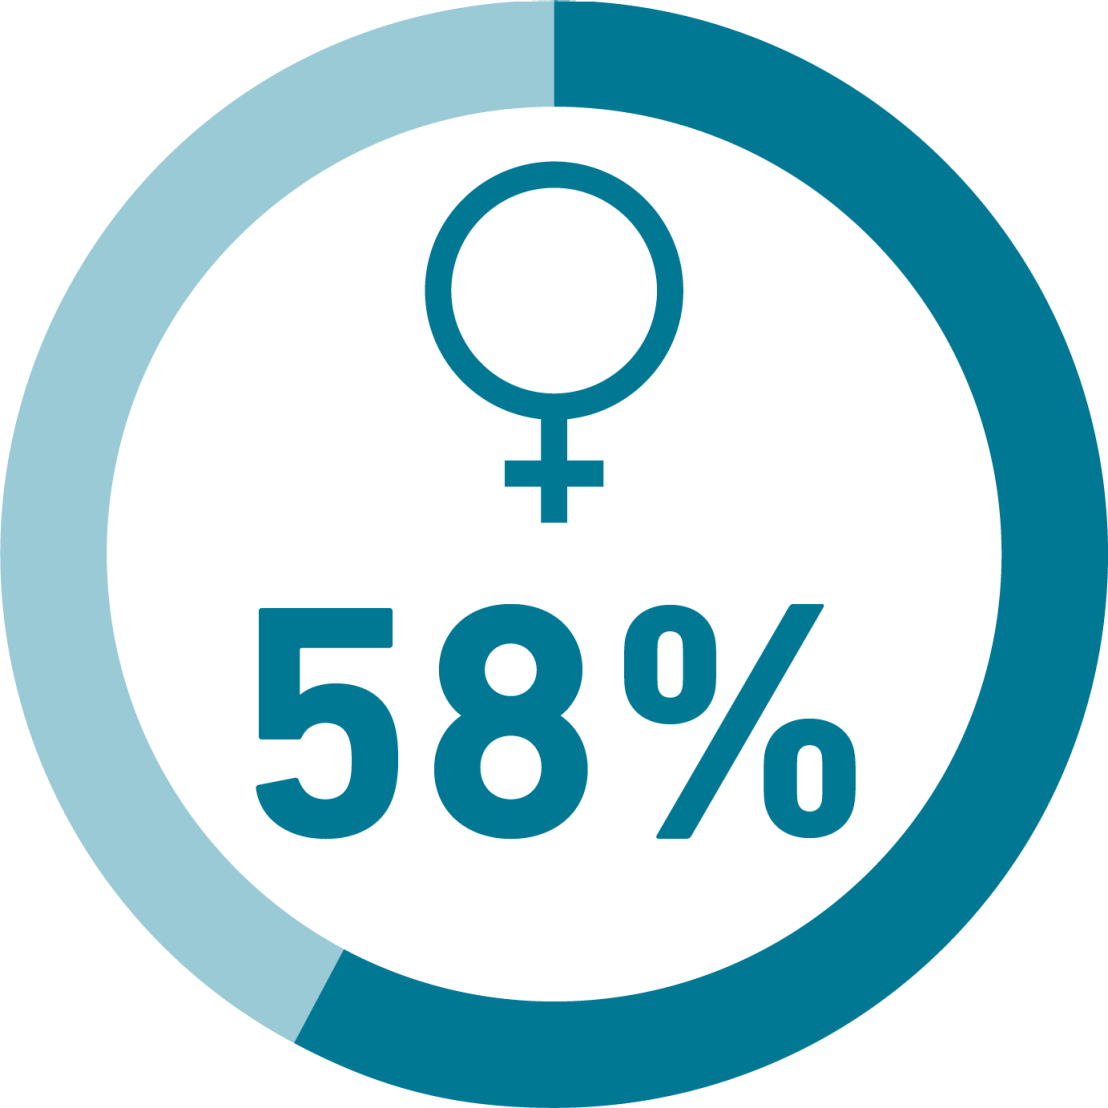 Illustration des Frauenanteils bei den Neuernennungen, 58%